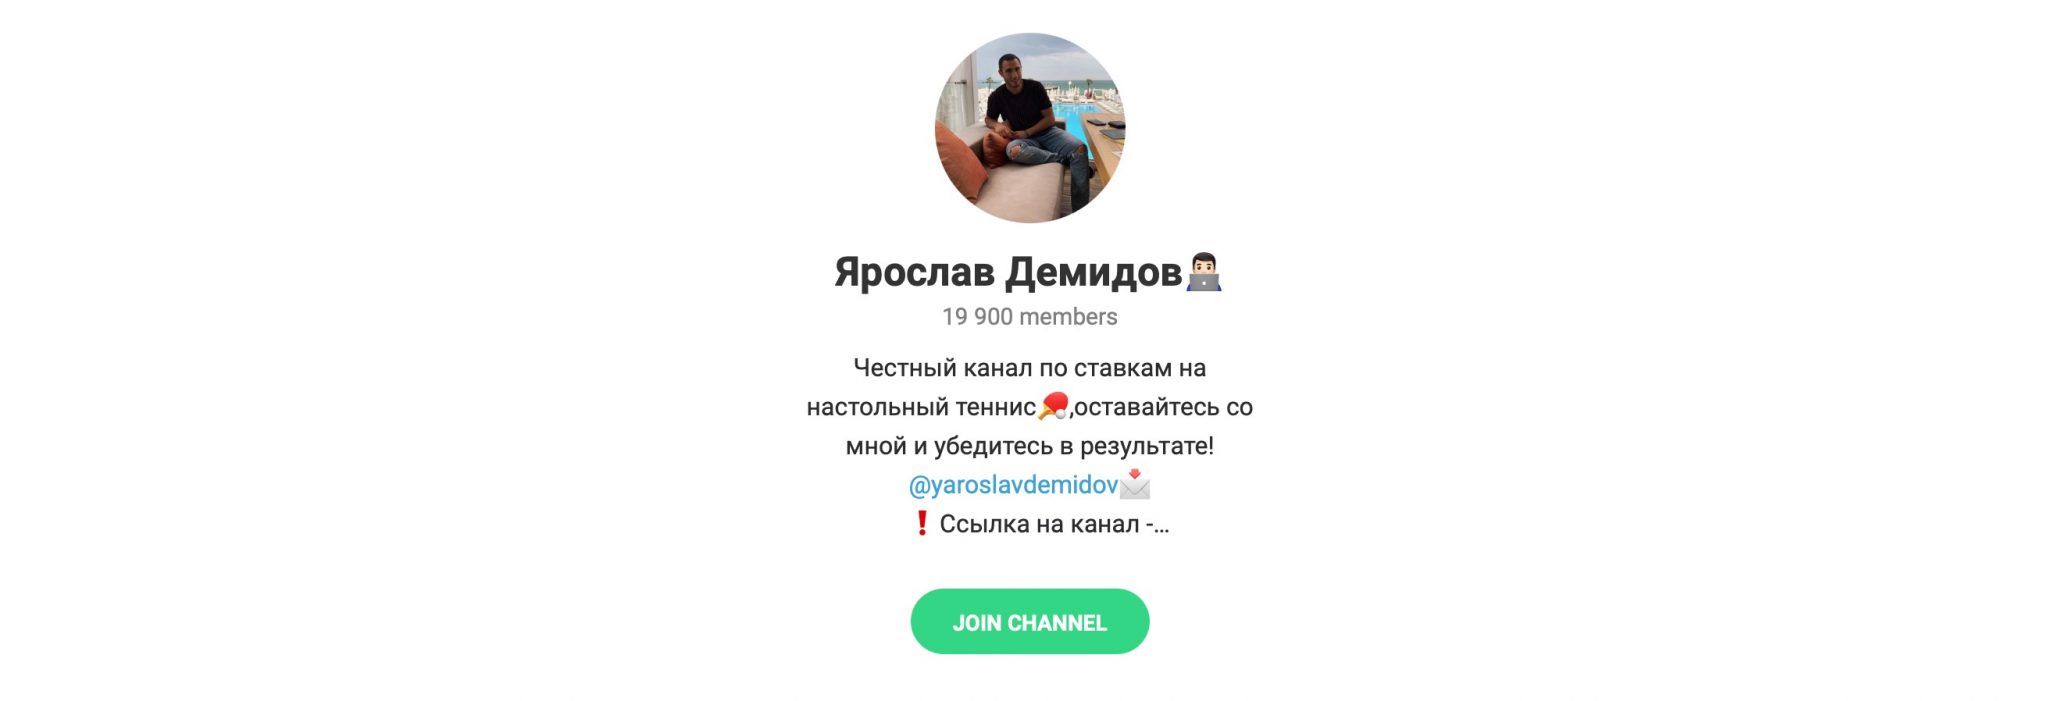 Внешний вид телеграм канала Ярослав Демидов